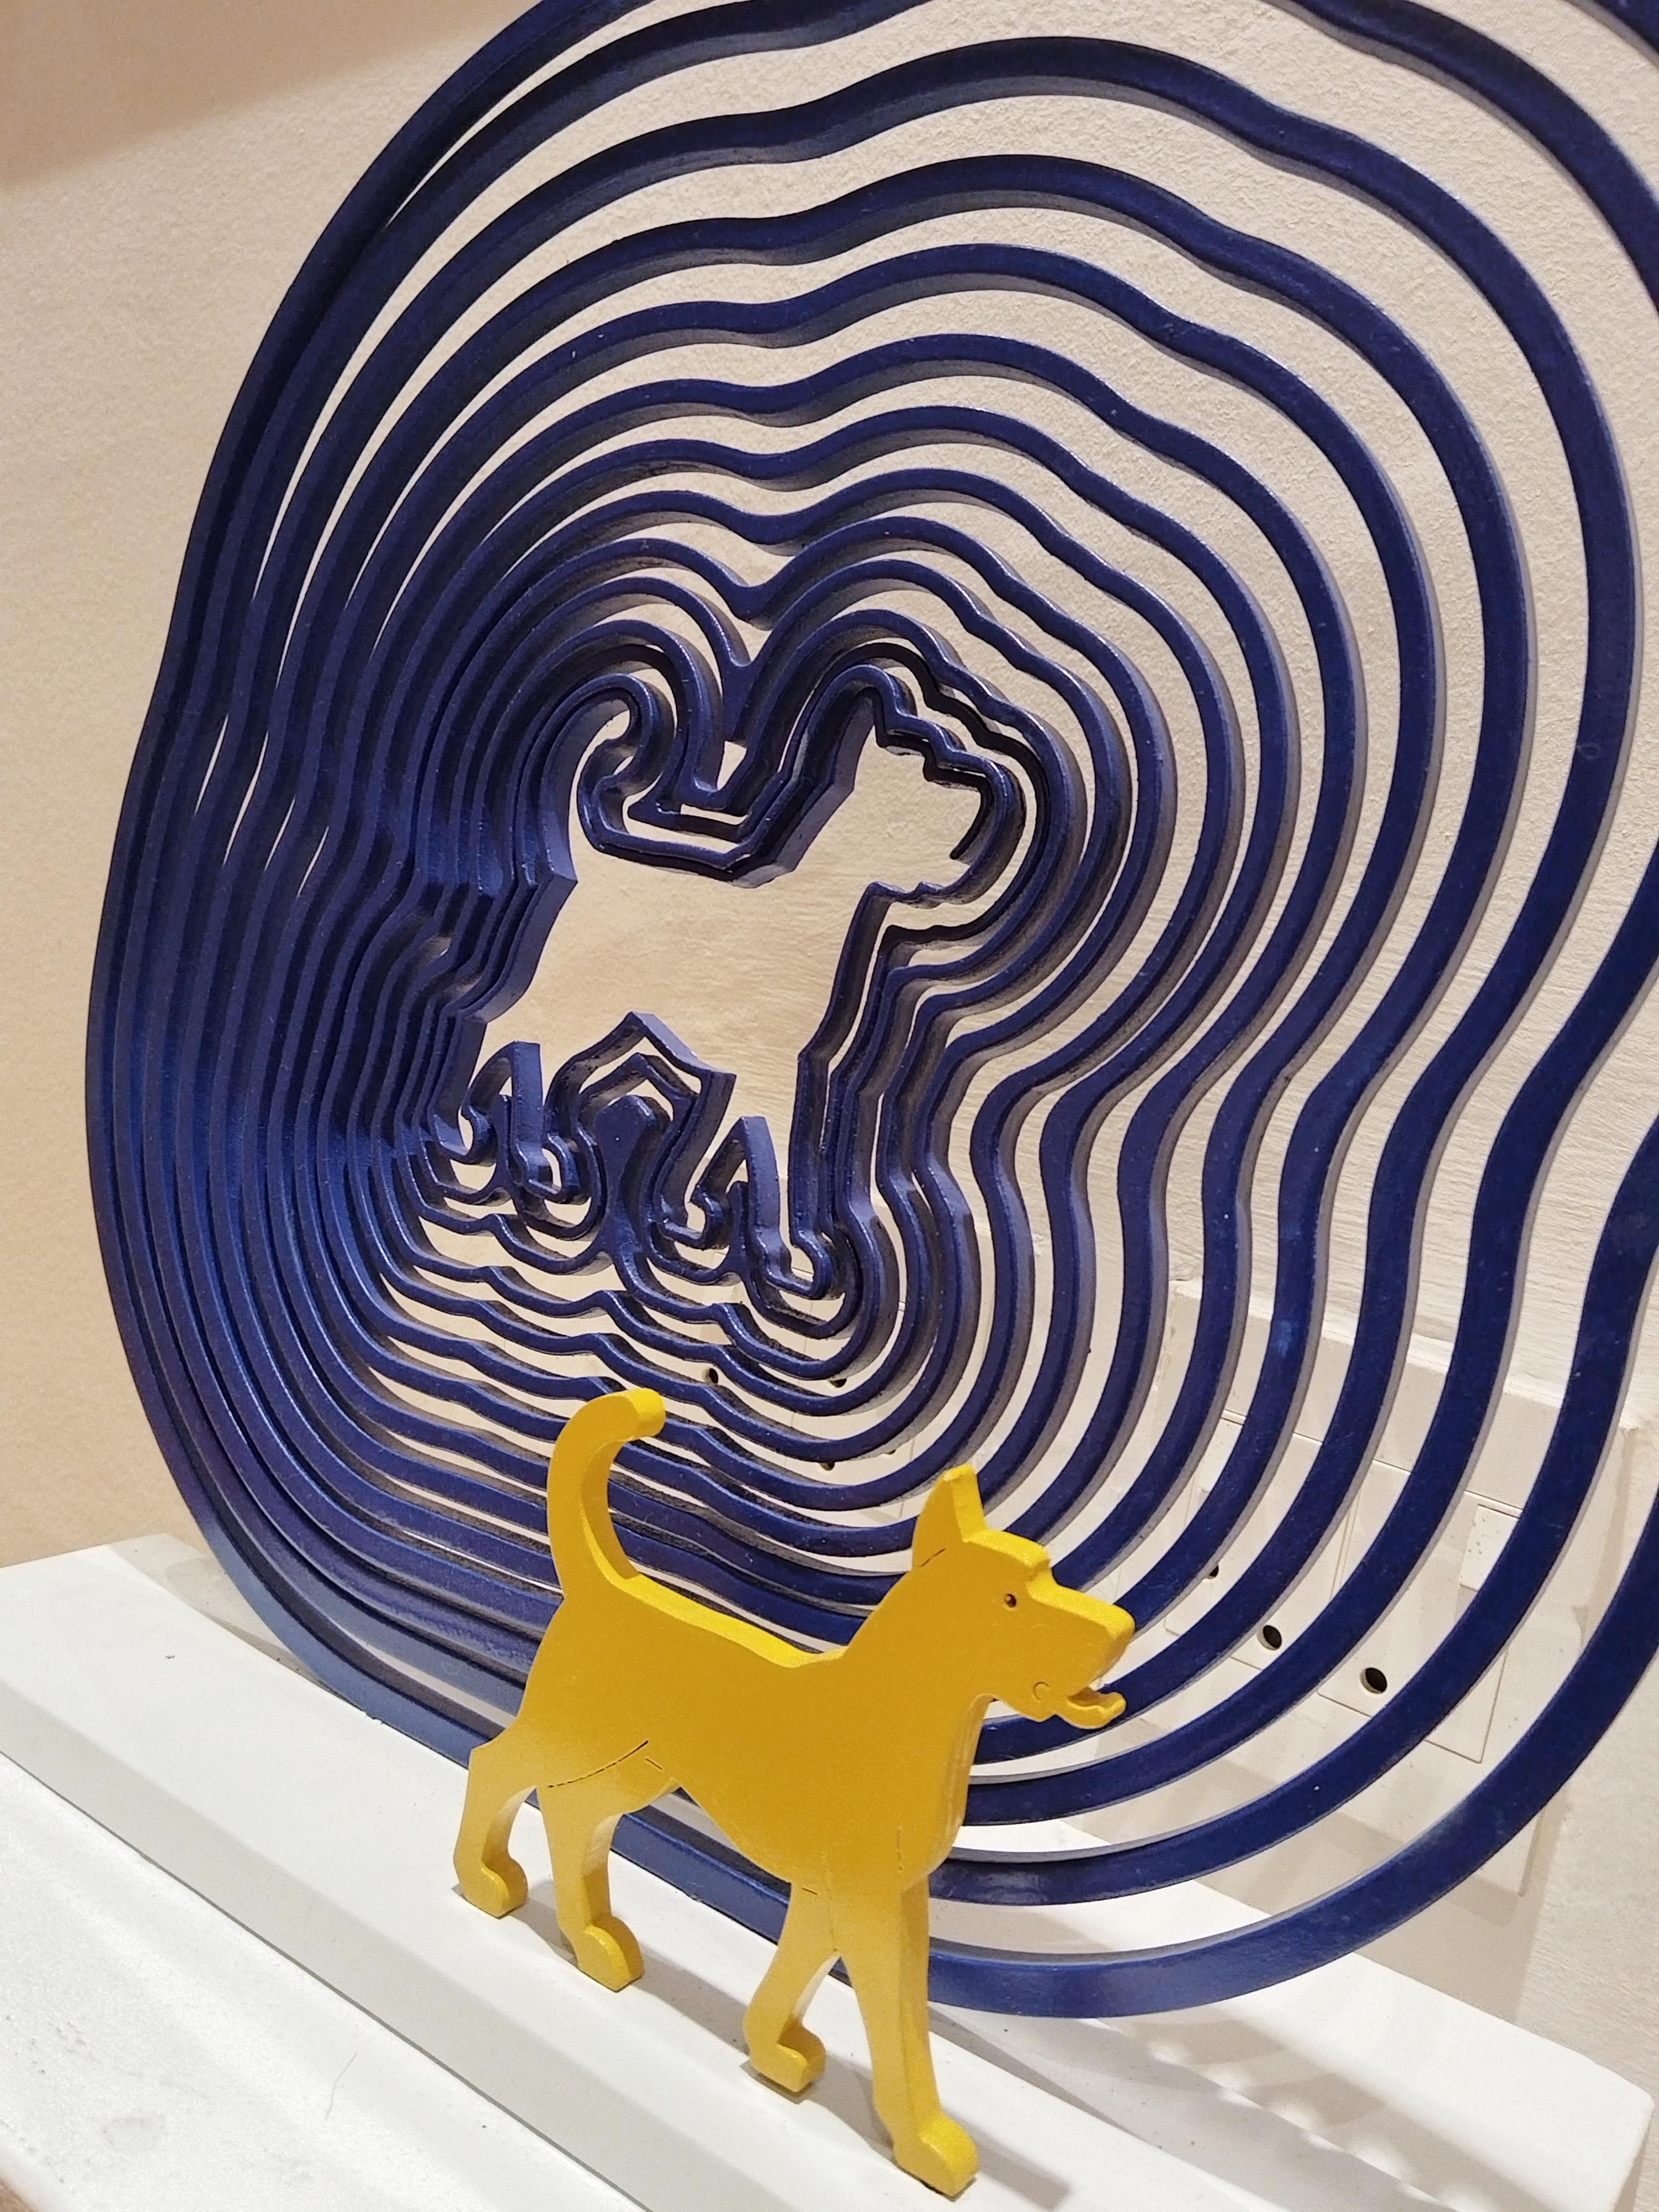 Kinetische Mild-Stahl-Skulptur „Spiral Hund“ in limitierter Auflage – Sculpture von Uwe Pfaff